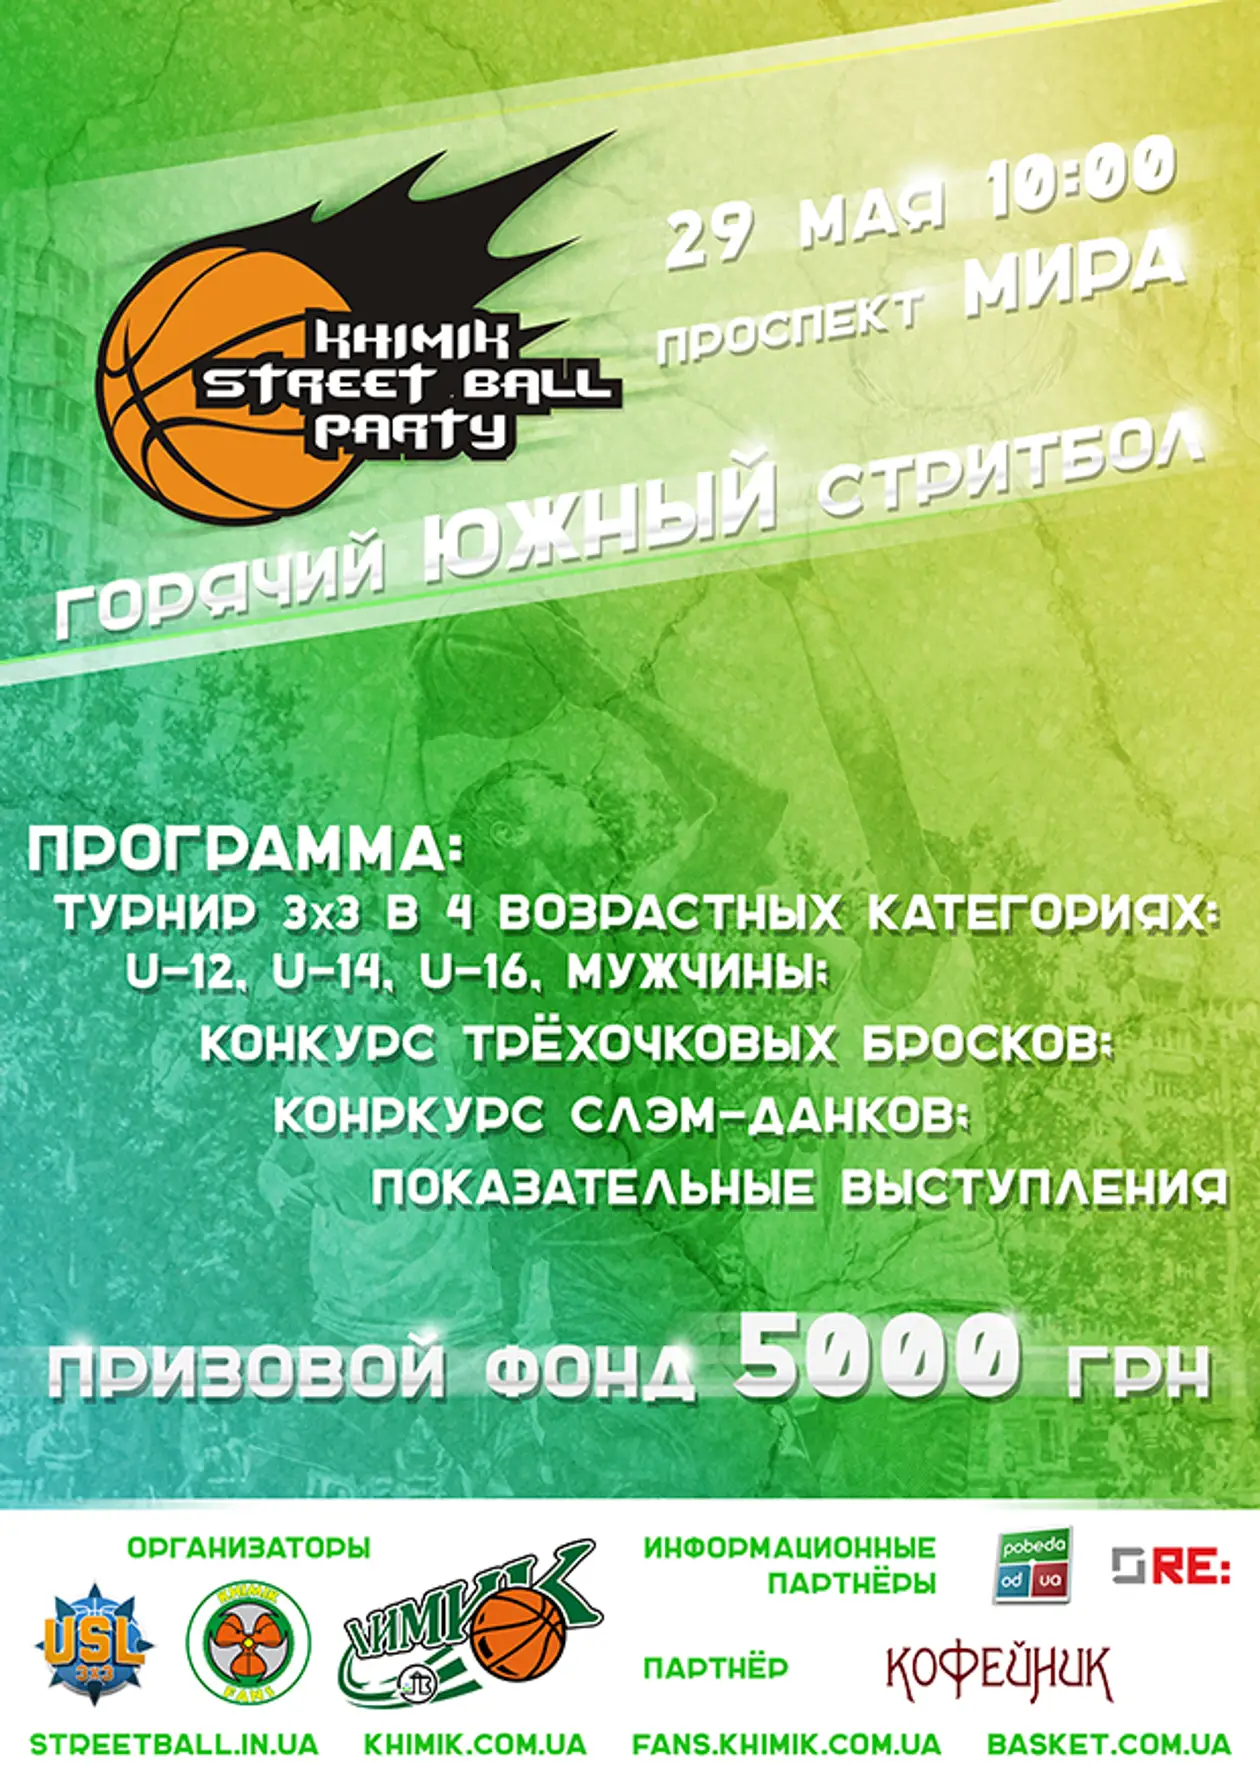 УСЛ 3х3 FIBA Endorsed: «Khimik Streetball Party vol.7»! Южный, 29 мая!